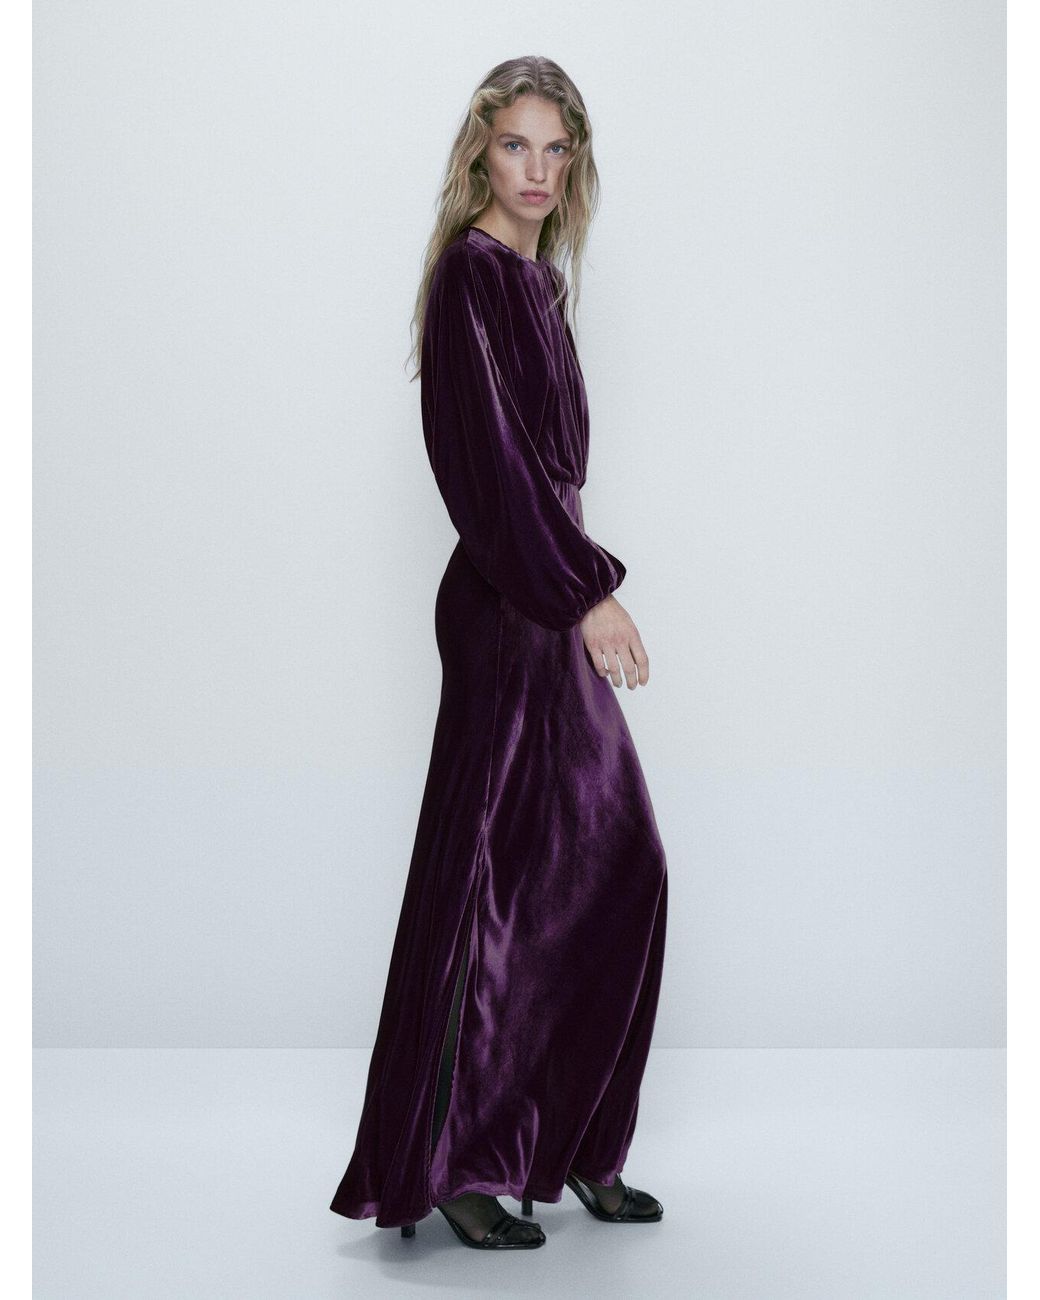 MASSIMO DUTTI Long Velvet Dress With Back Detail in Purple | Lyst